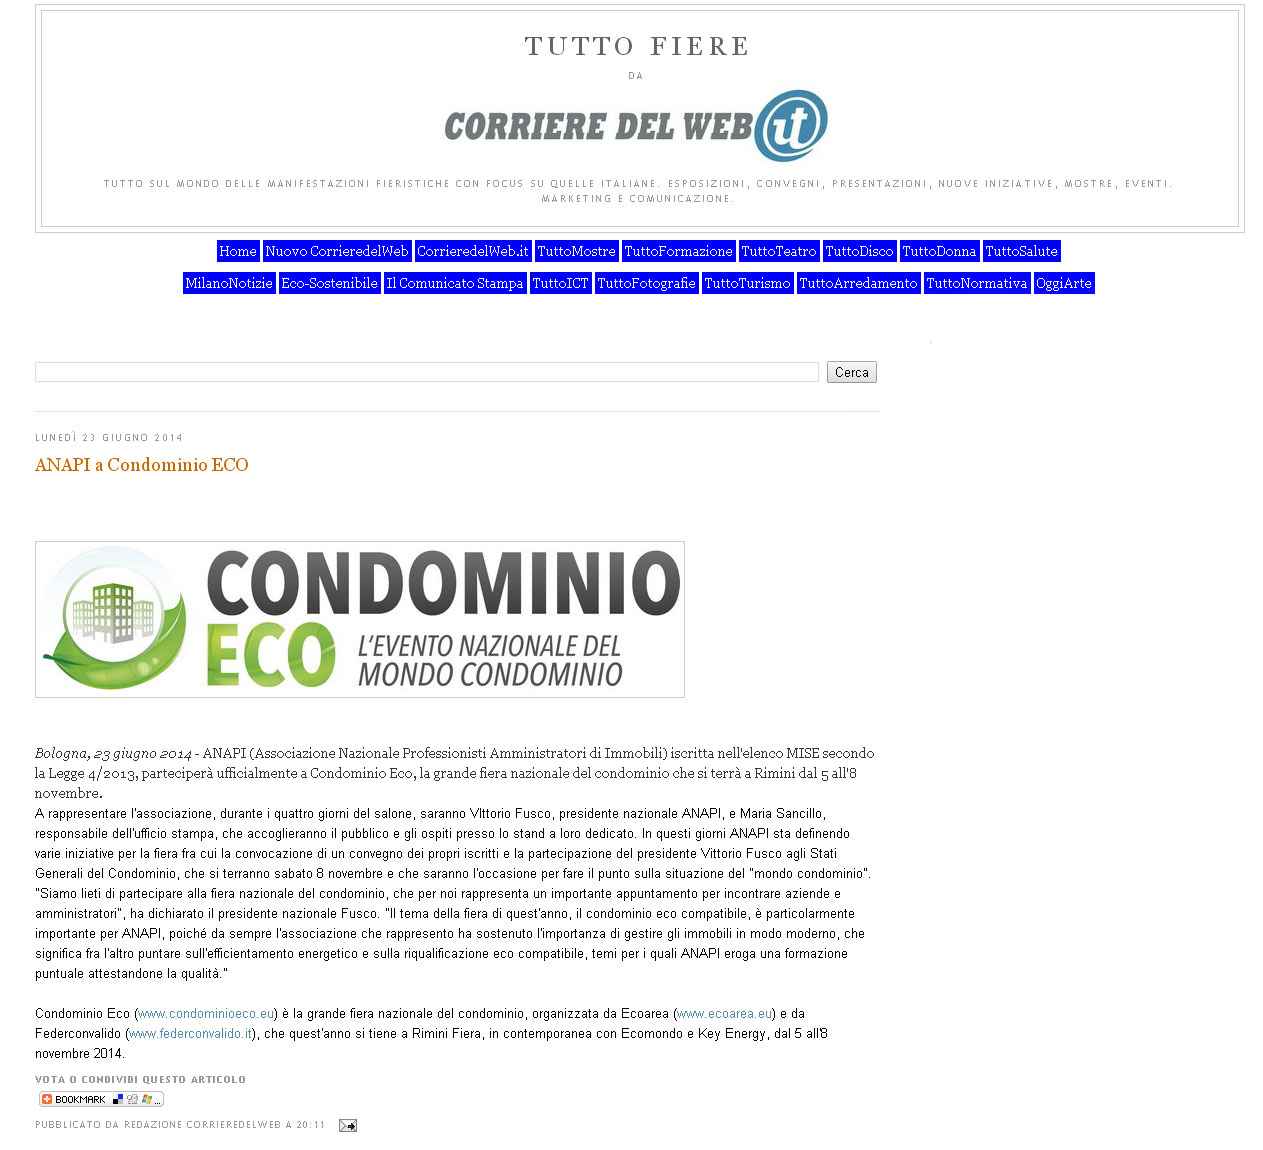 Tuttofiere_corriere-del-web_ANAPI a Condominio ECO